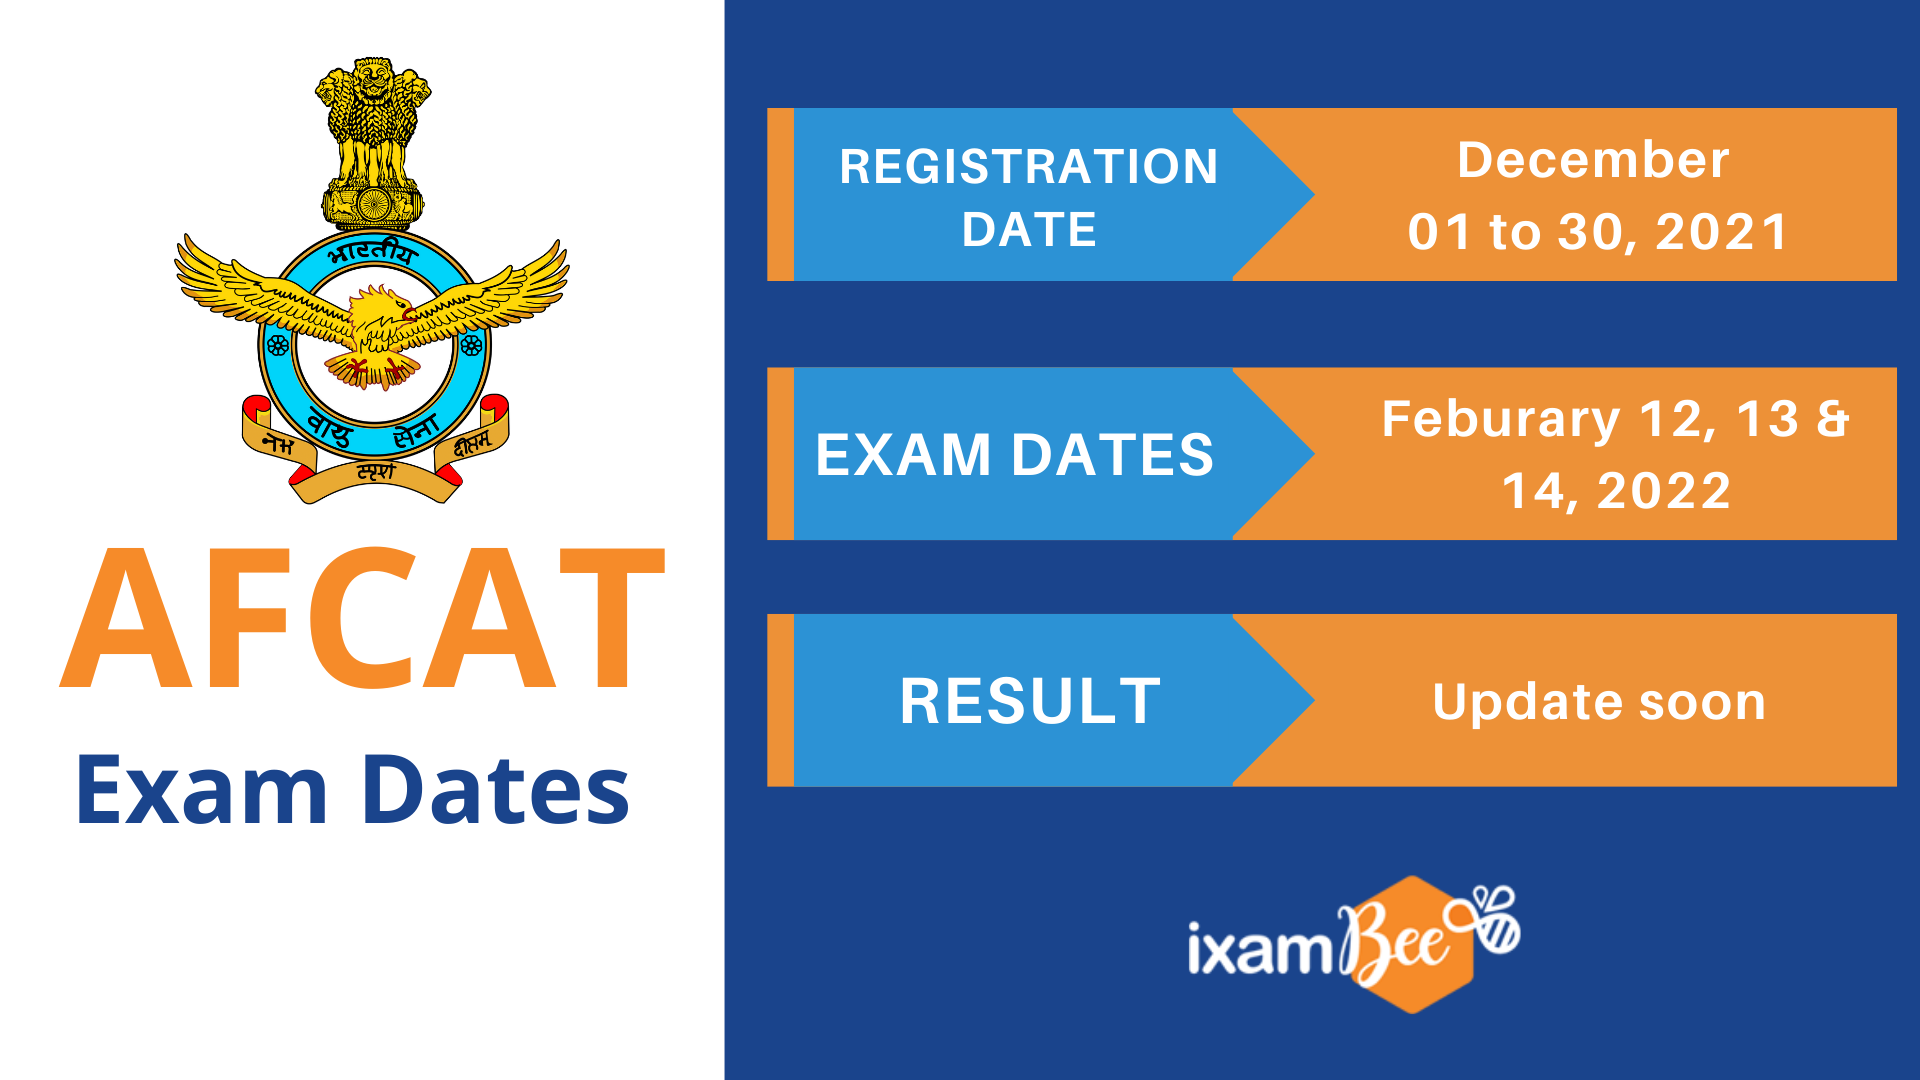 AFCAT Exam Dates